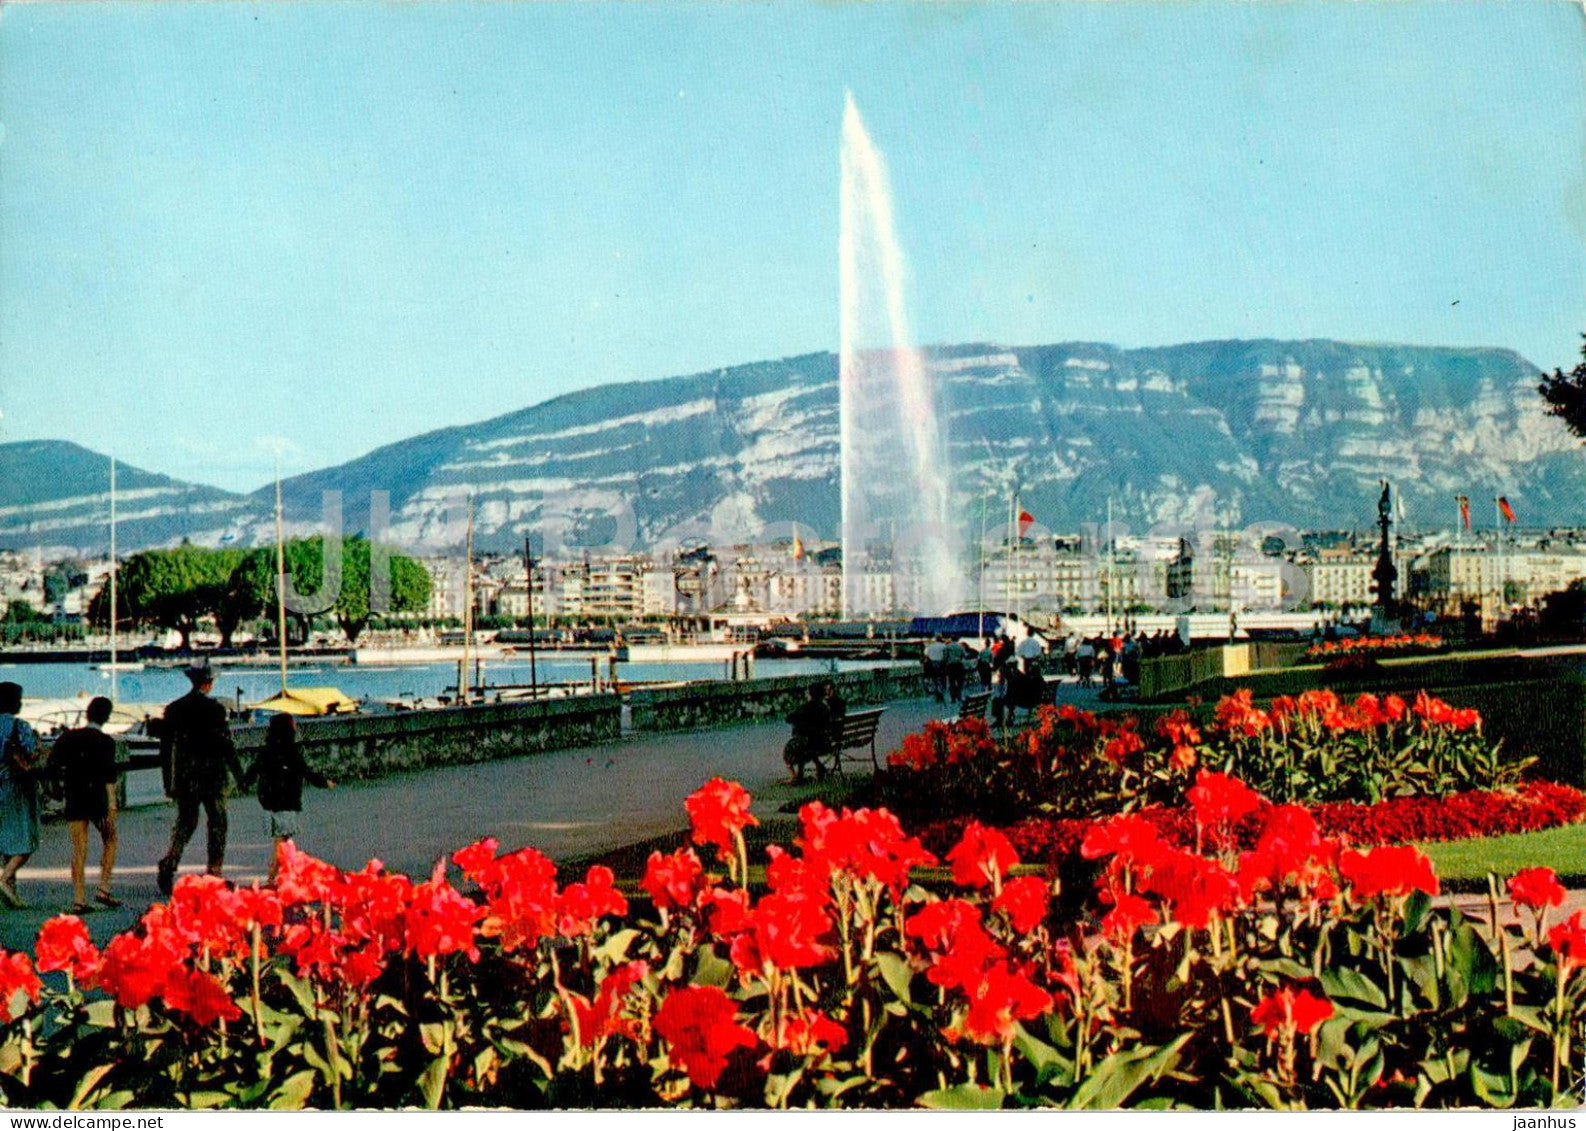 Geneva - Geneve - Le quai Wilson et le jet d'eau - 470 - 1975 - Switzerland - used - JH Postcards